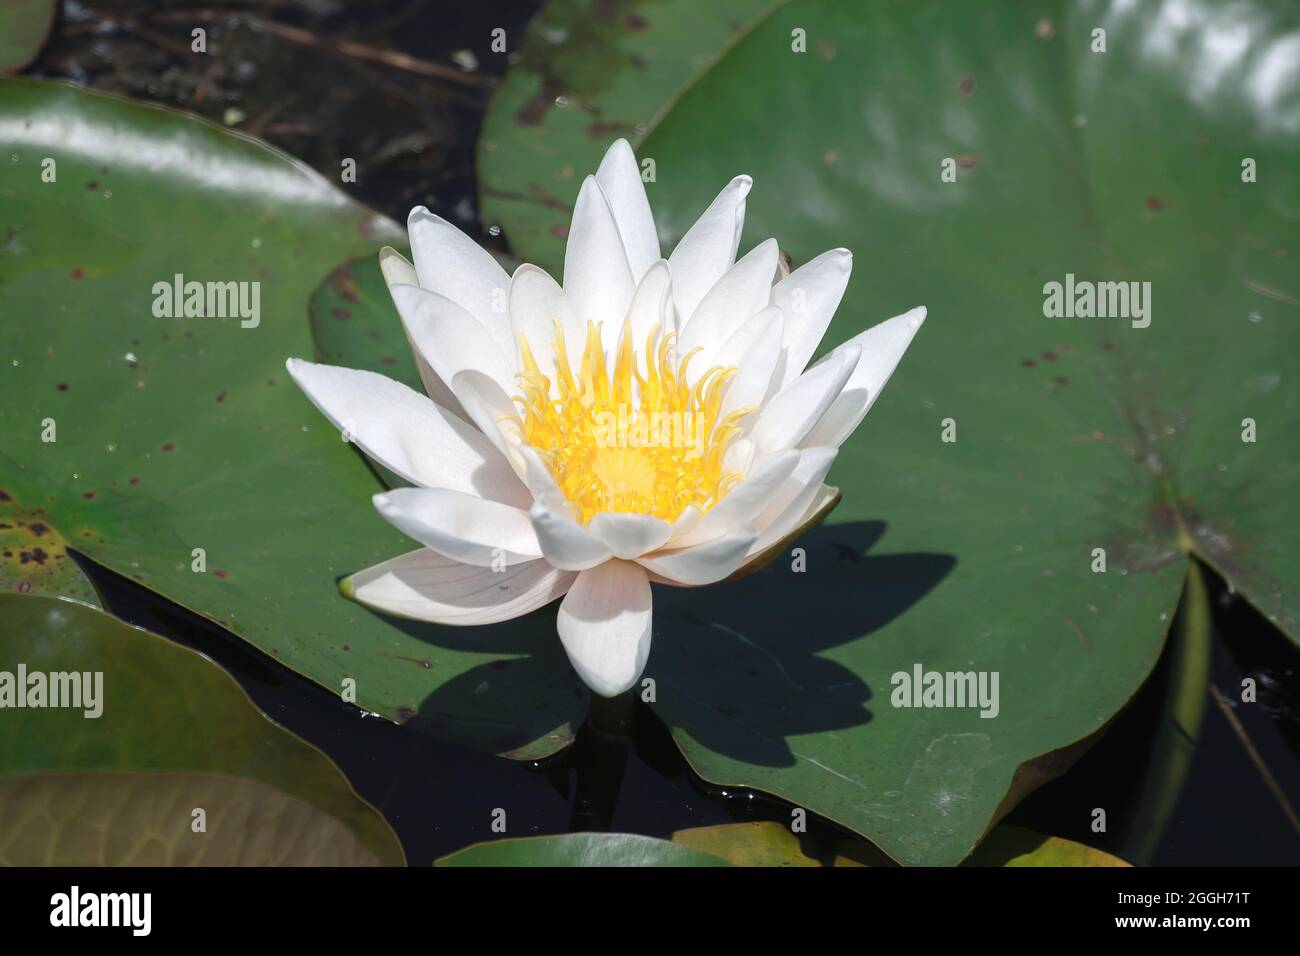 Nymphaea alba connu comme l'eau blanche européenne Lily blanc fleur flottante en fleur Banque D'Images